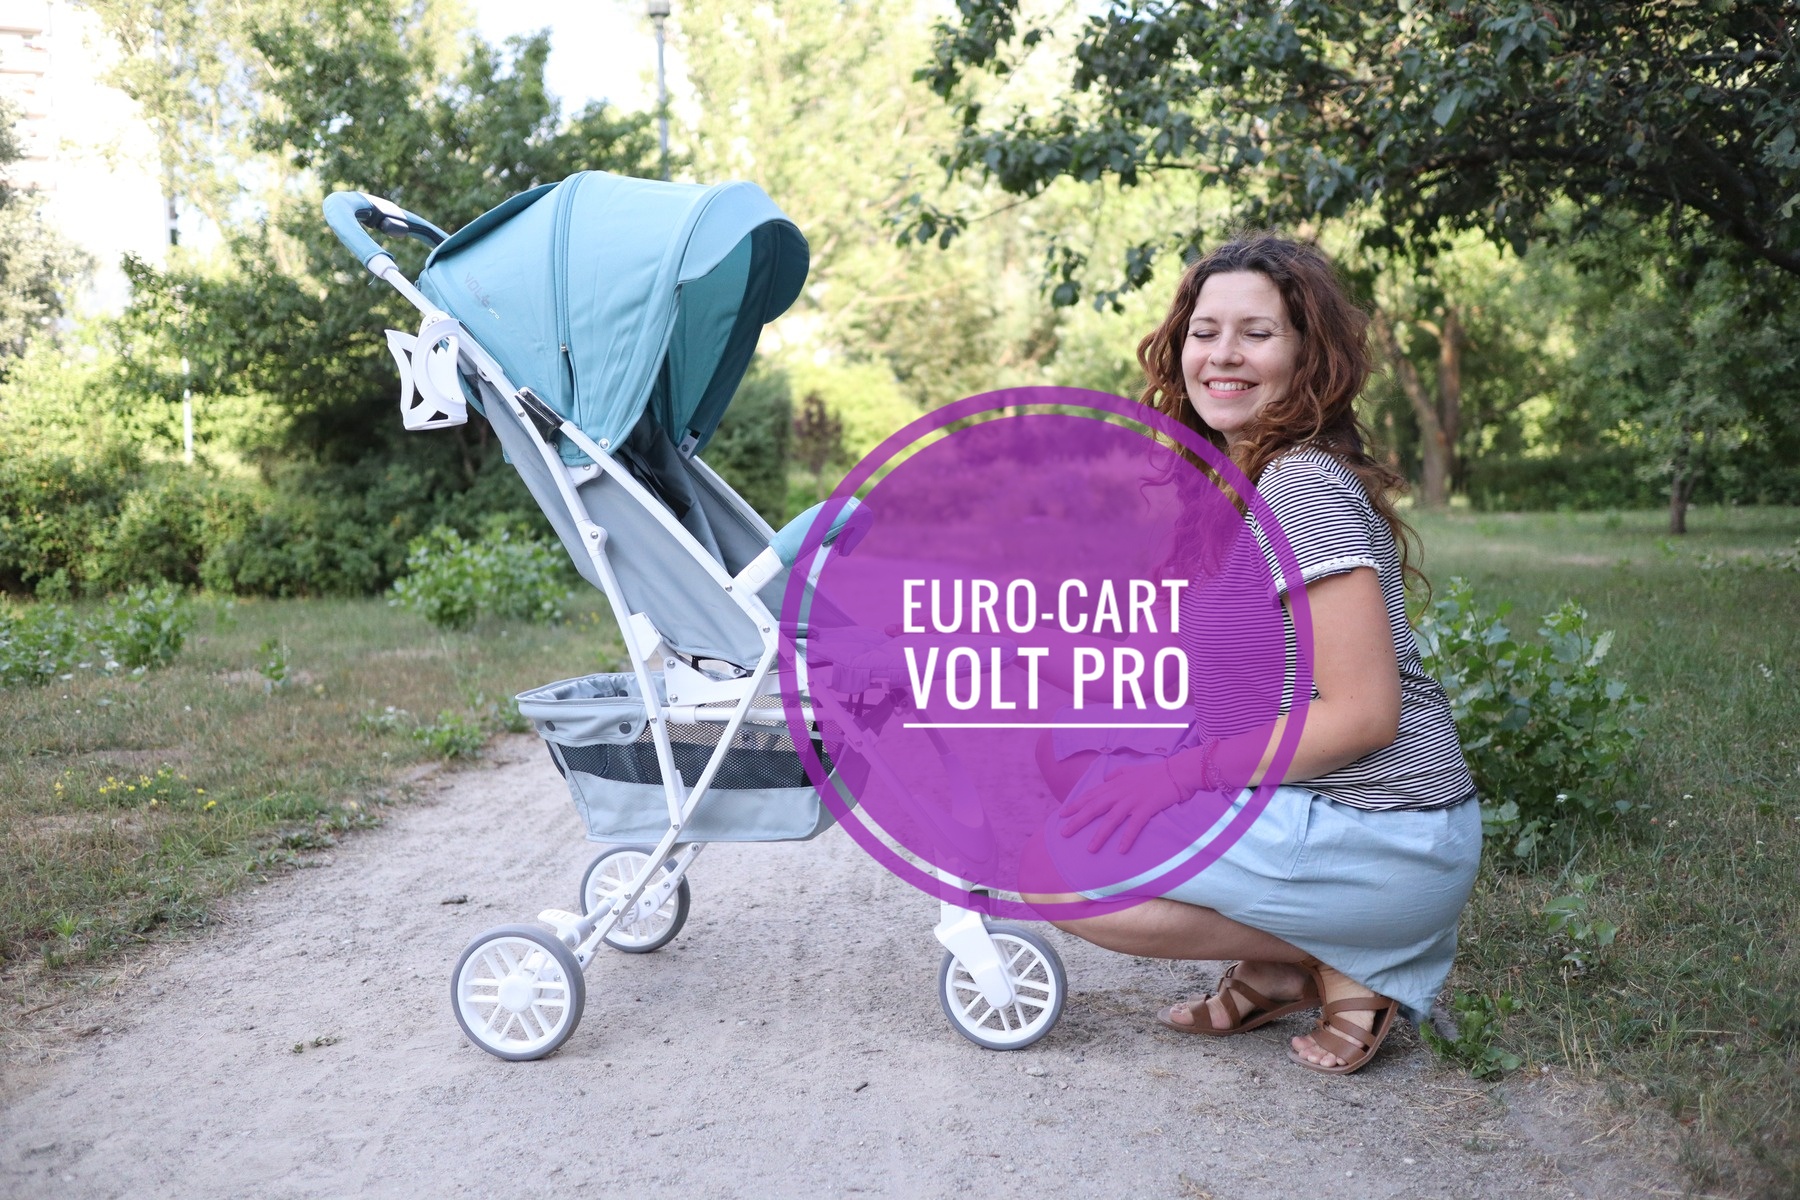 Euro-cart Volt Pro